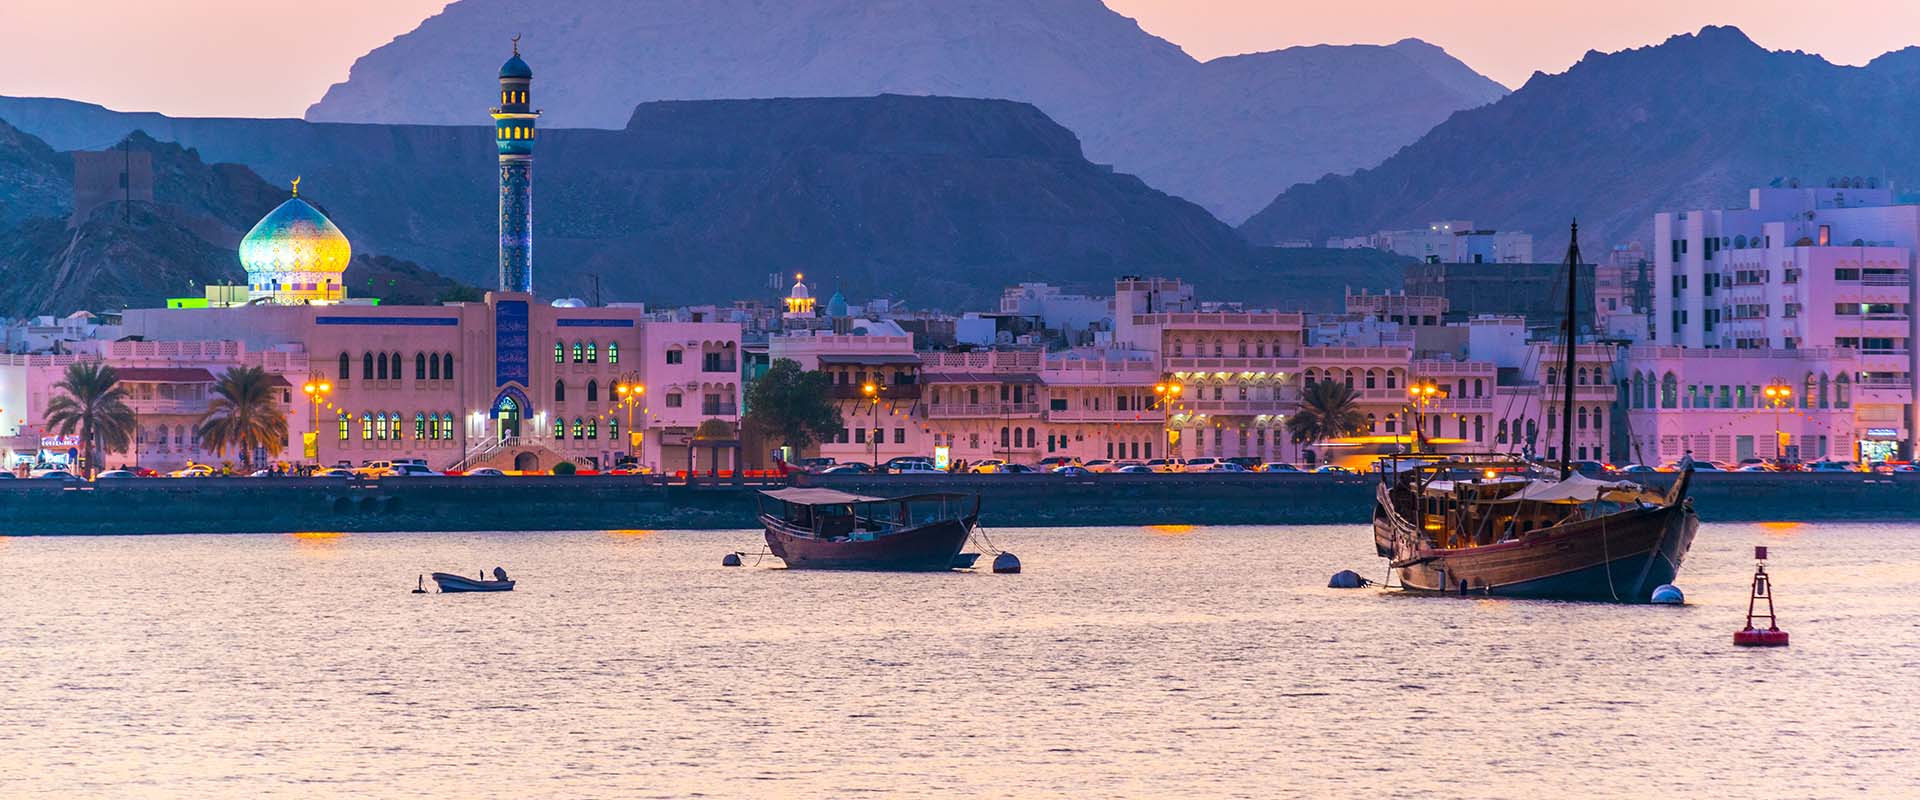 Cruceros de Aventura en Oman - LiveAboard.com